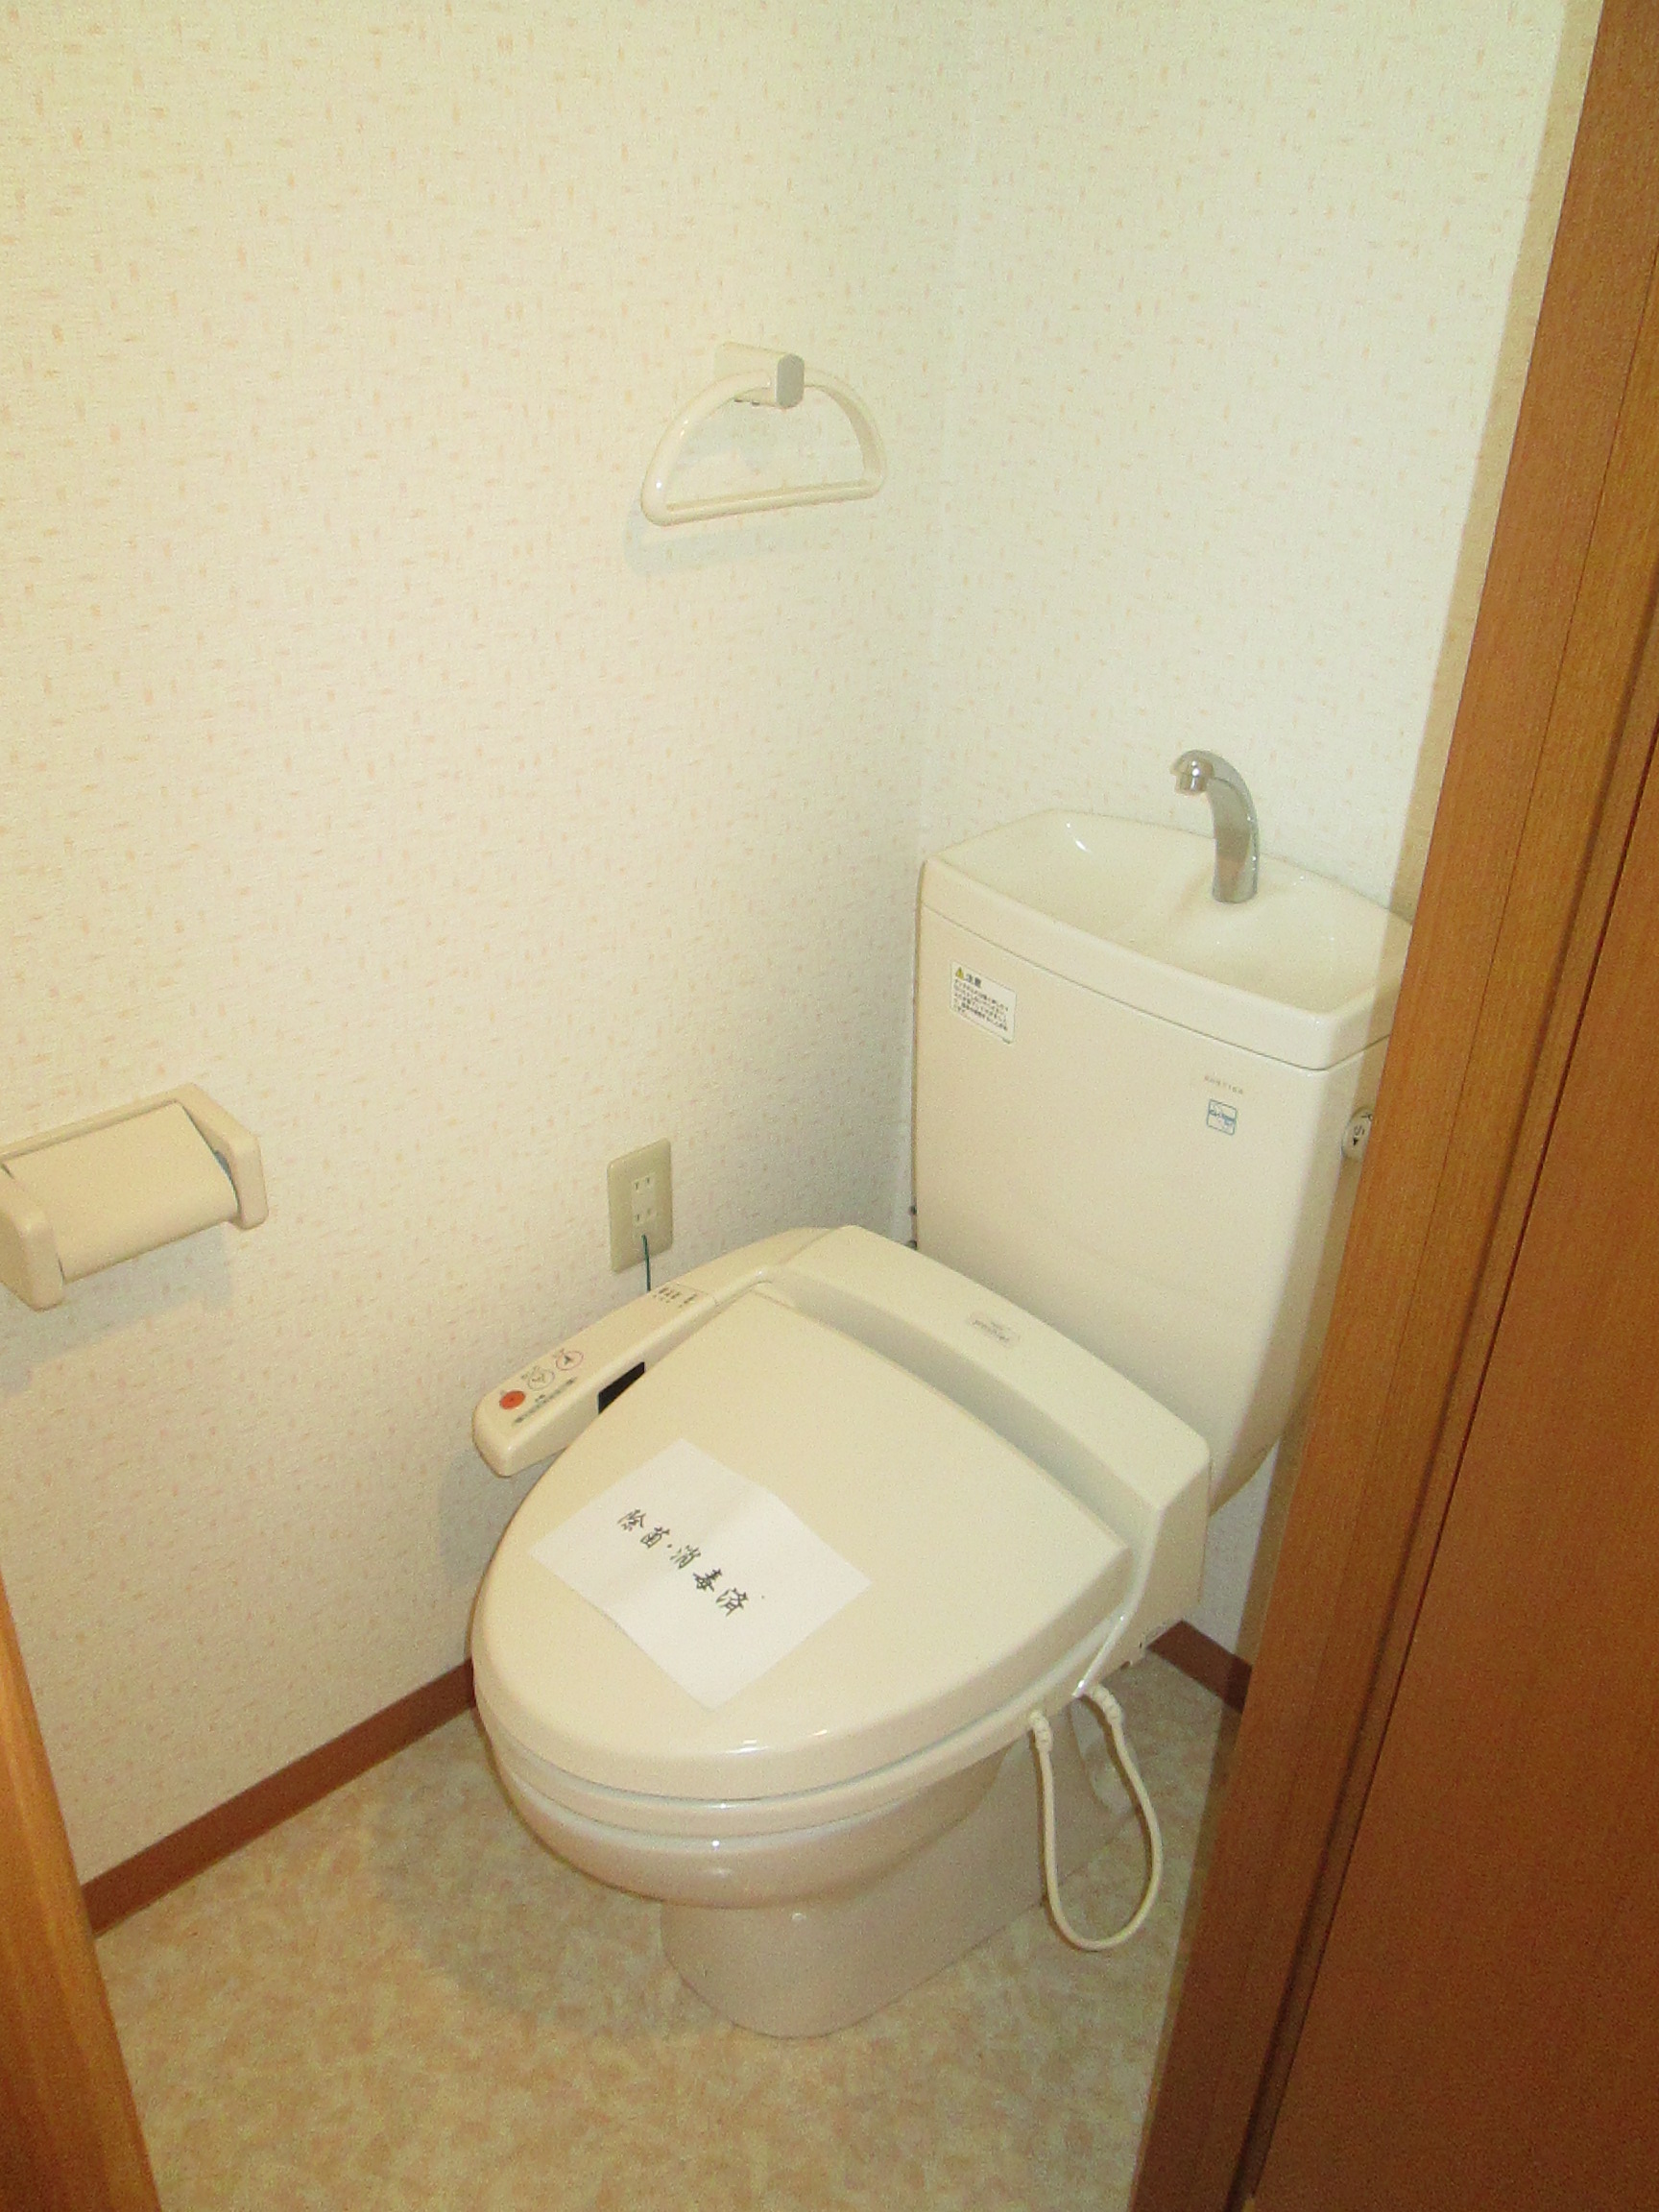 Toilet. Warm toilet with bidet